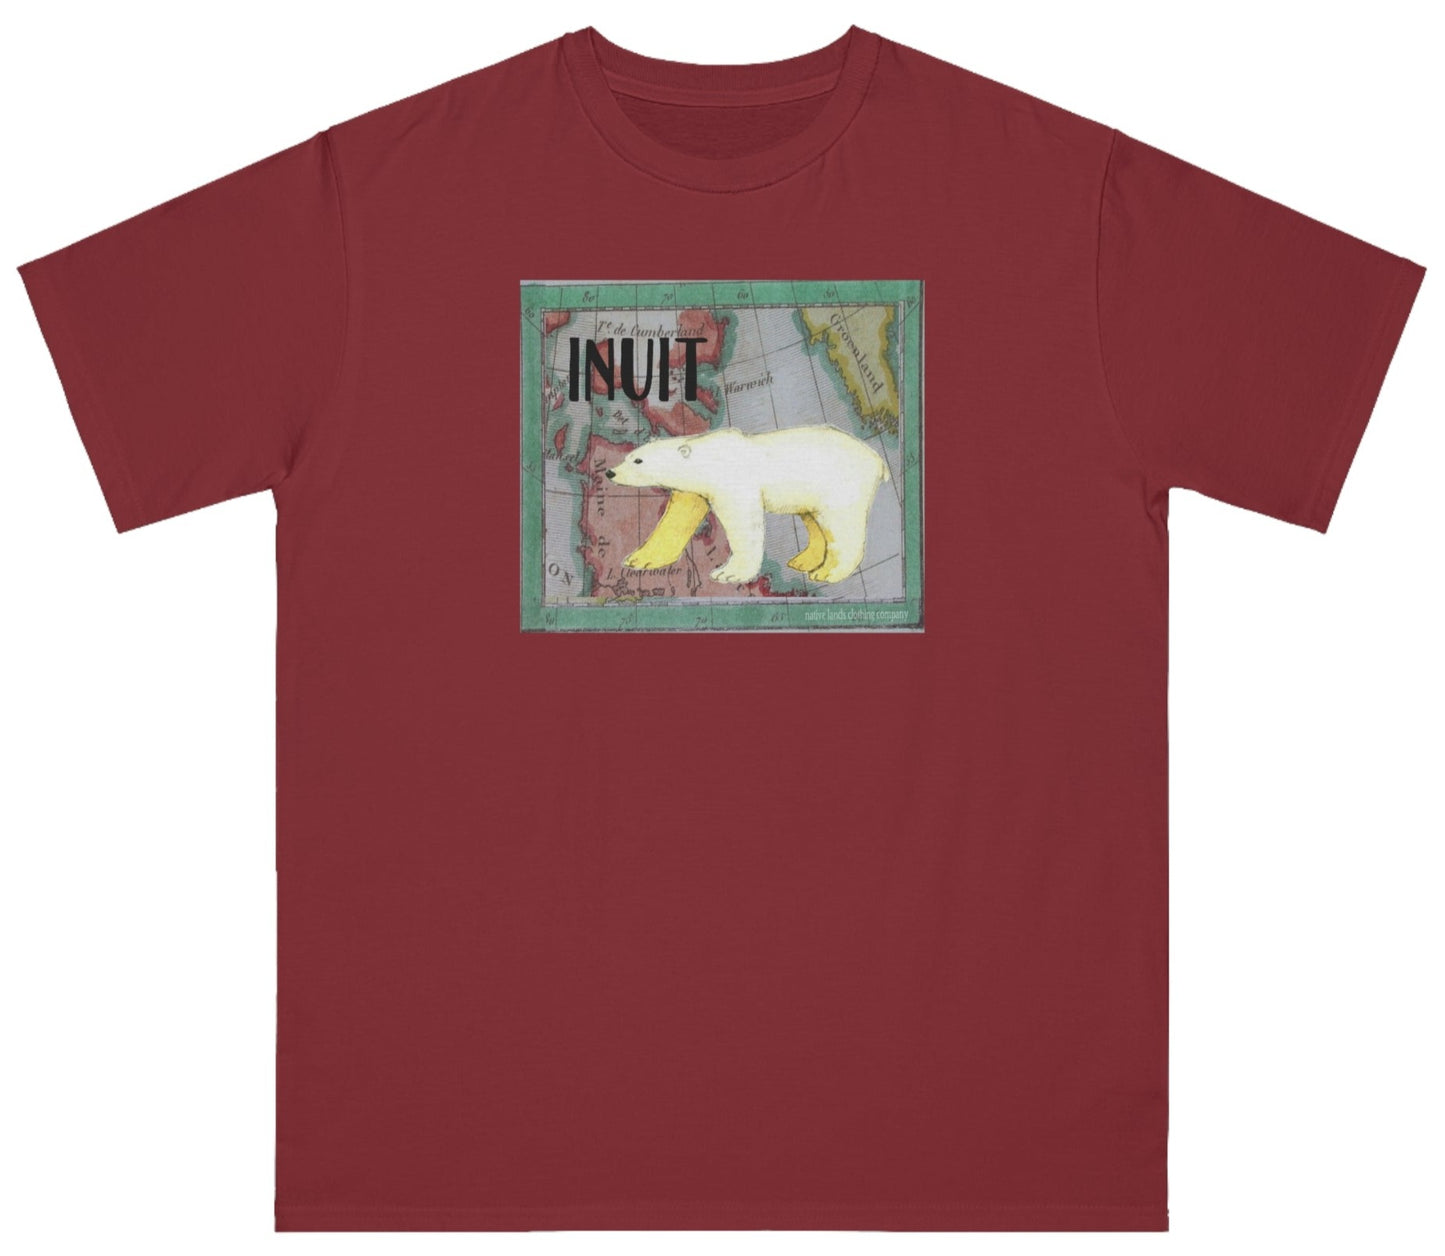 Organiczna koszula plemienia Inuitów, bawełniana rdzenni Amerykanie, niedźwiedź polarny